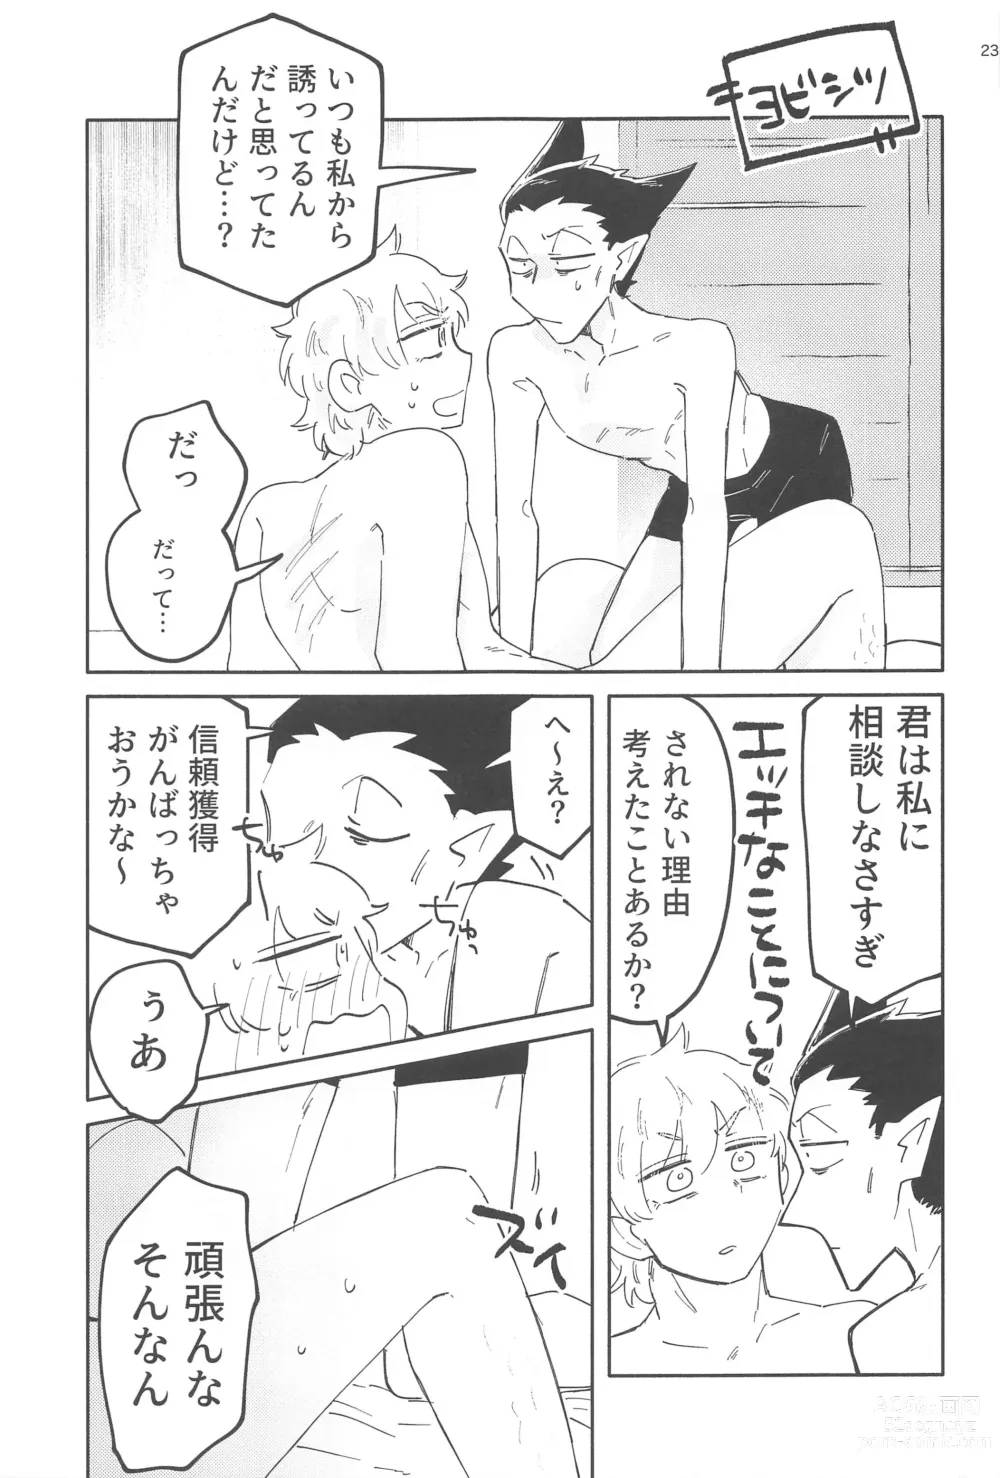 Page 22 of doujinshi ZHKNN!